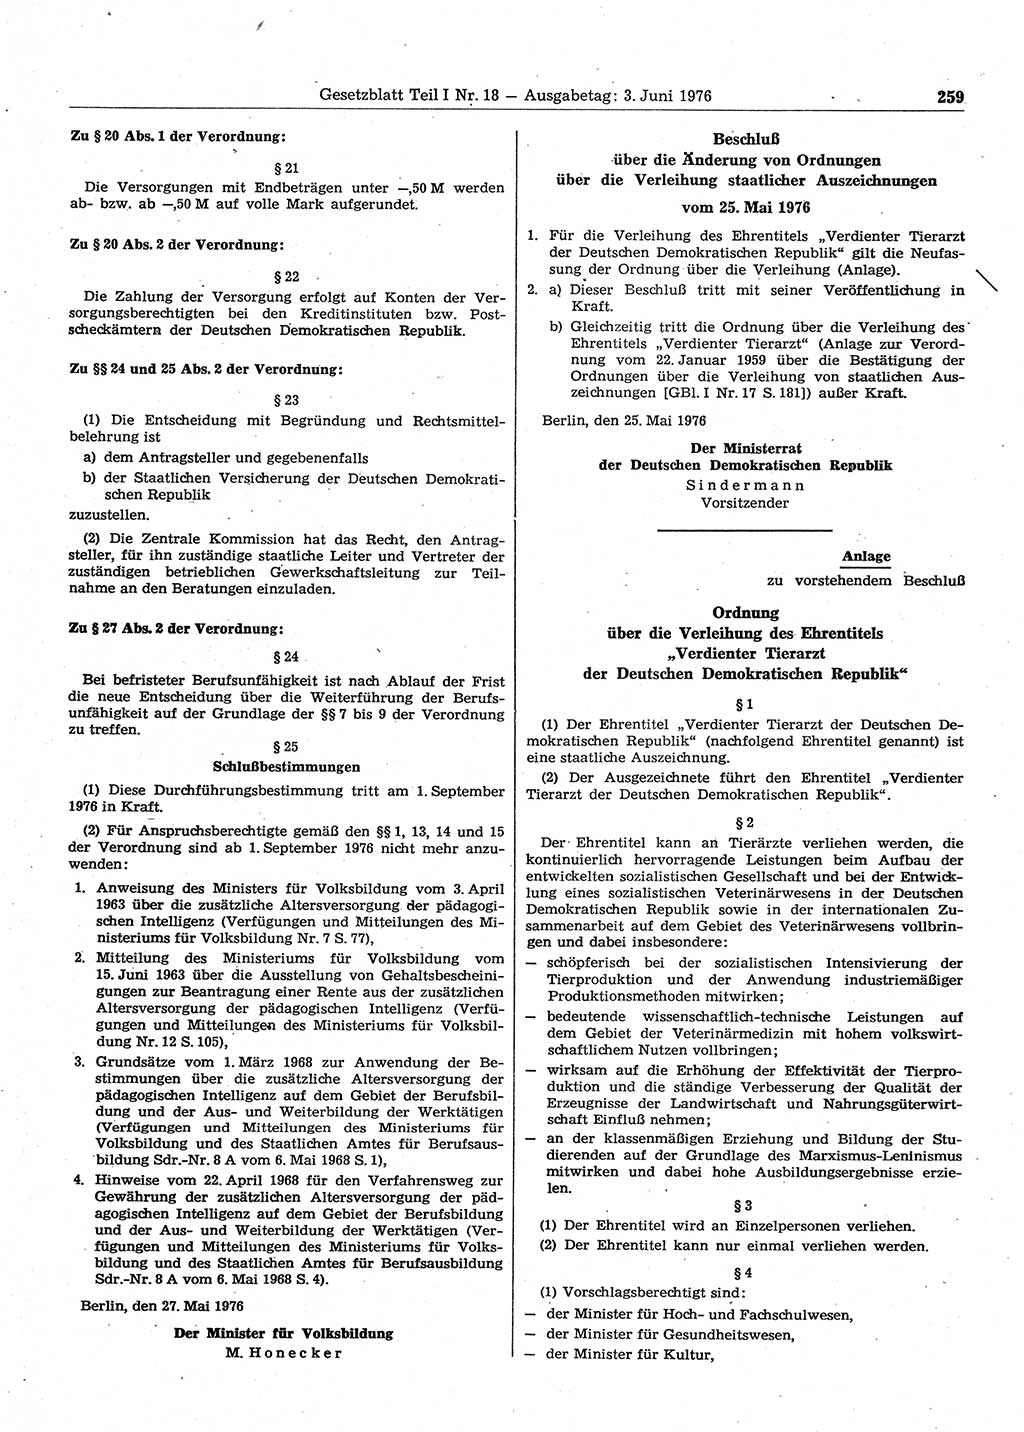 Gesetzblatt (GBl.) der Deutschen Demokratischen Republik (DDR) Teil Ⅰ 1976, Seite 259 (GBl. DDR Ⅰ 1976, S. 259)